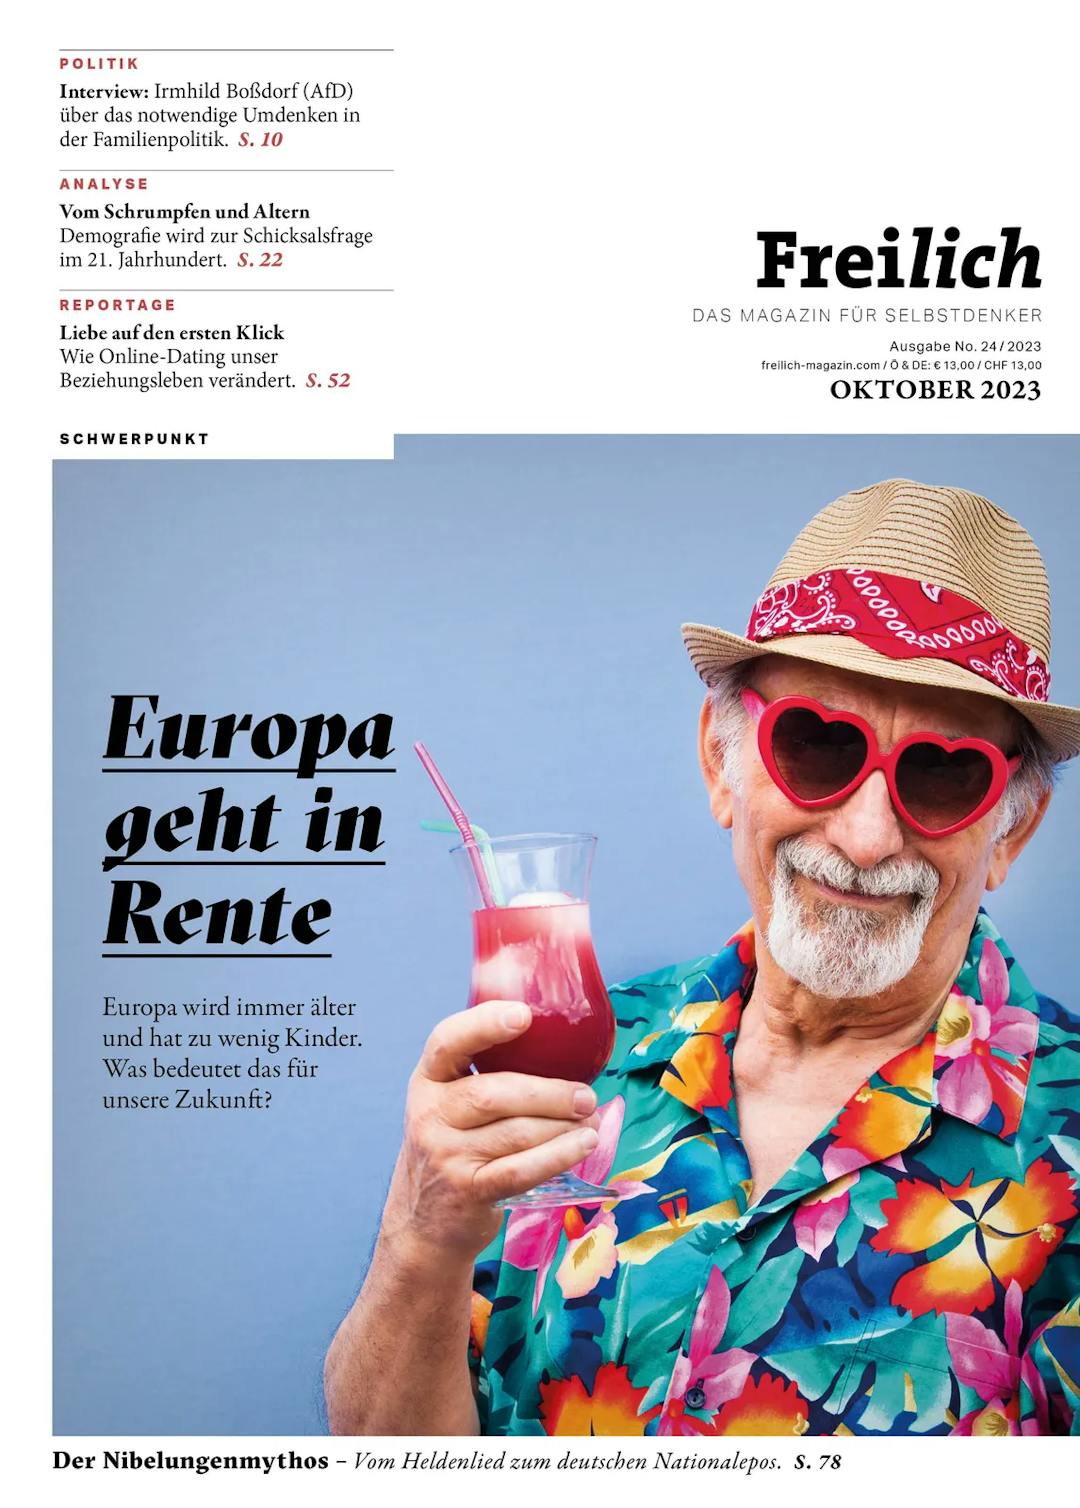 Europa geht in Rente